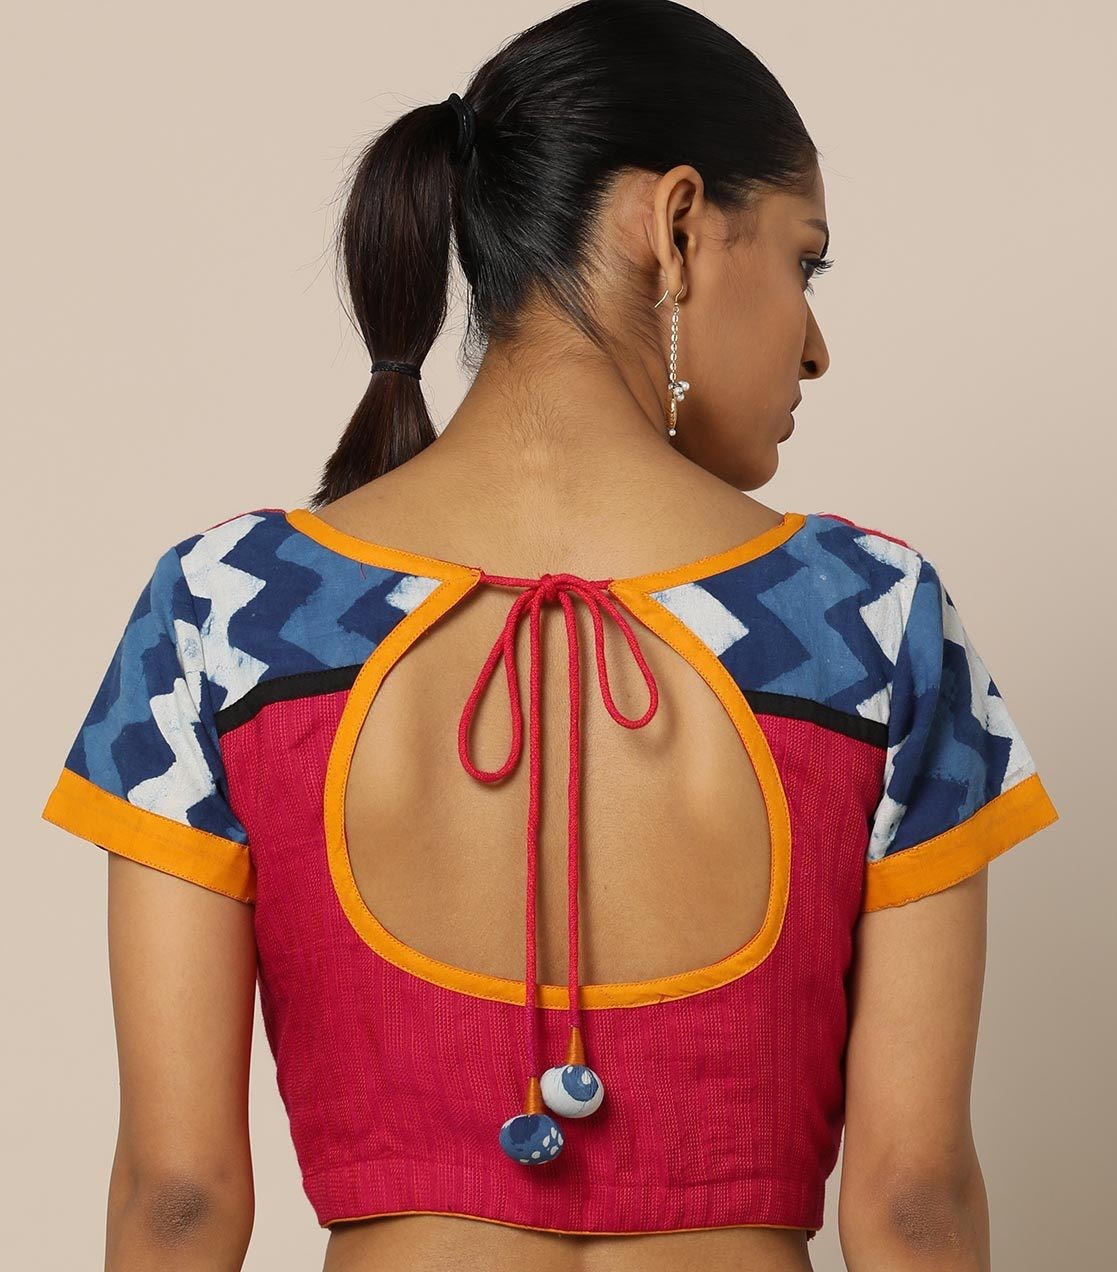 simple back neck design